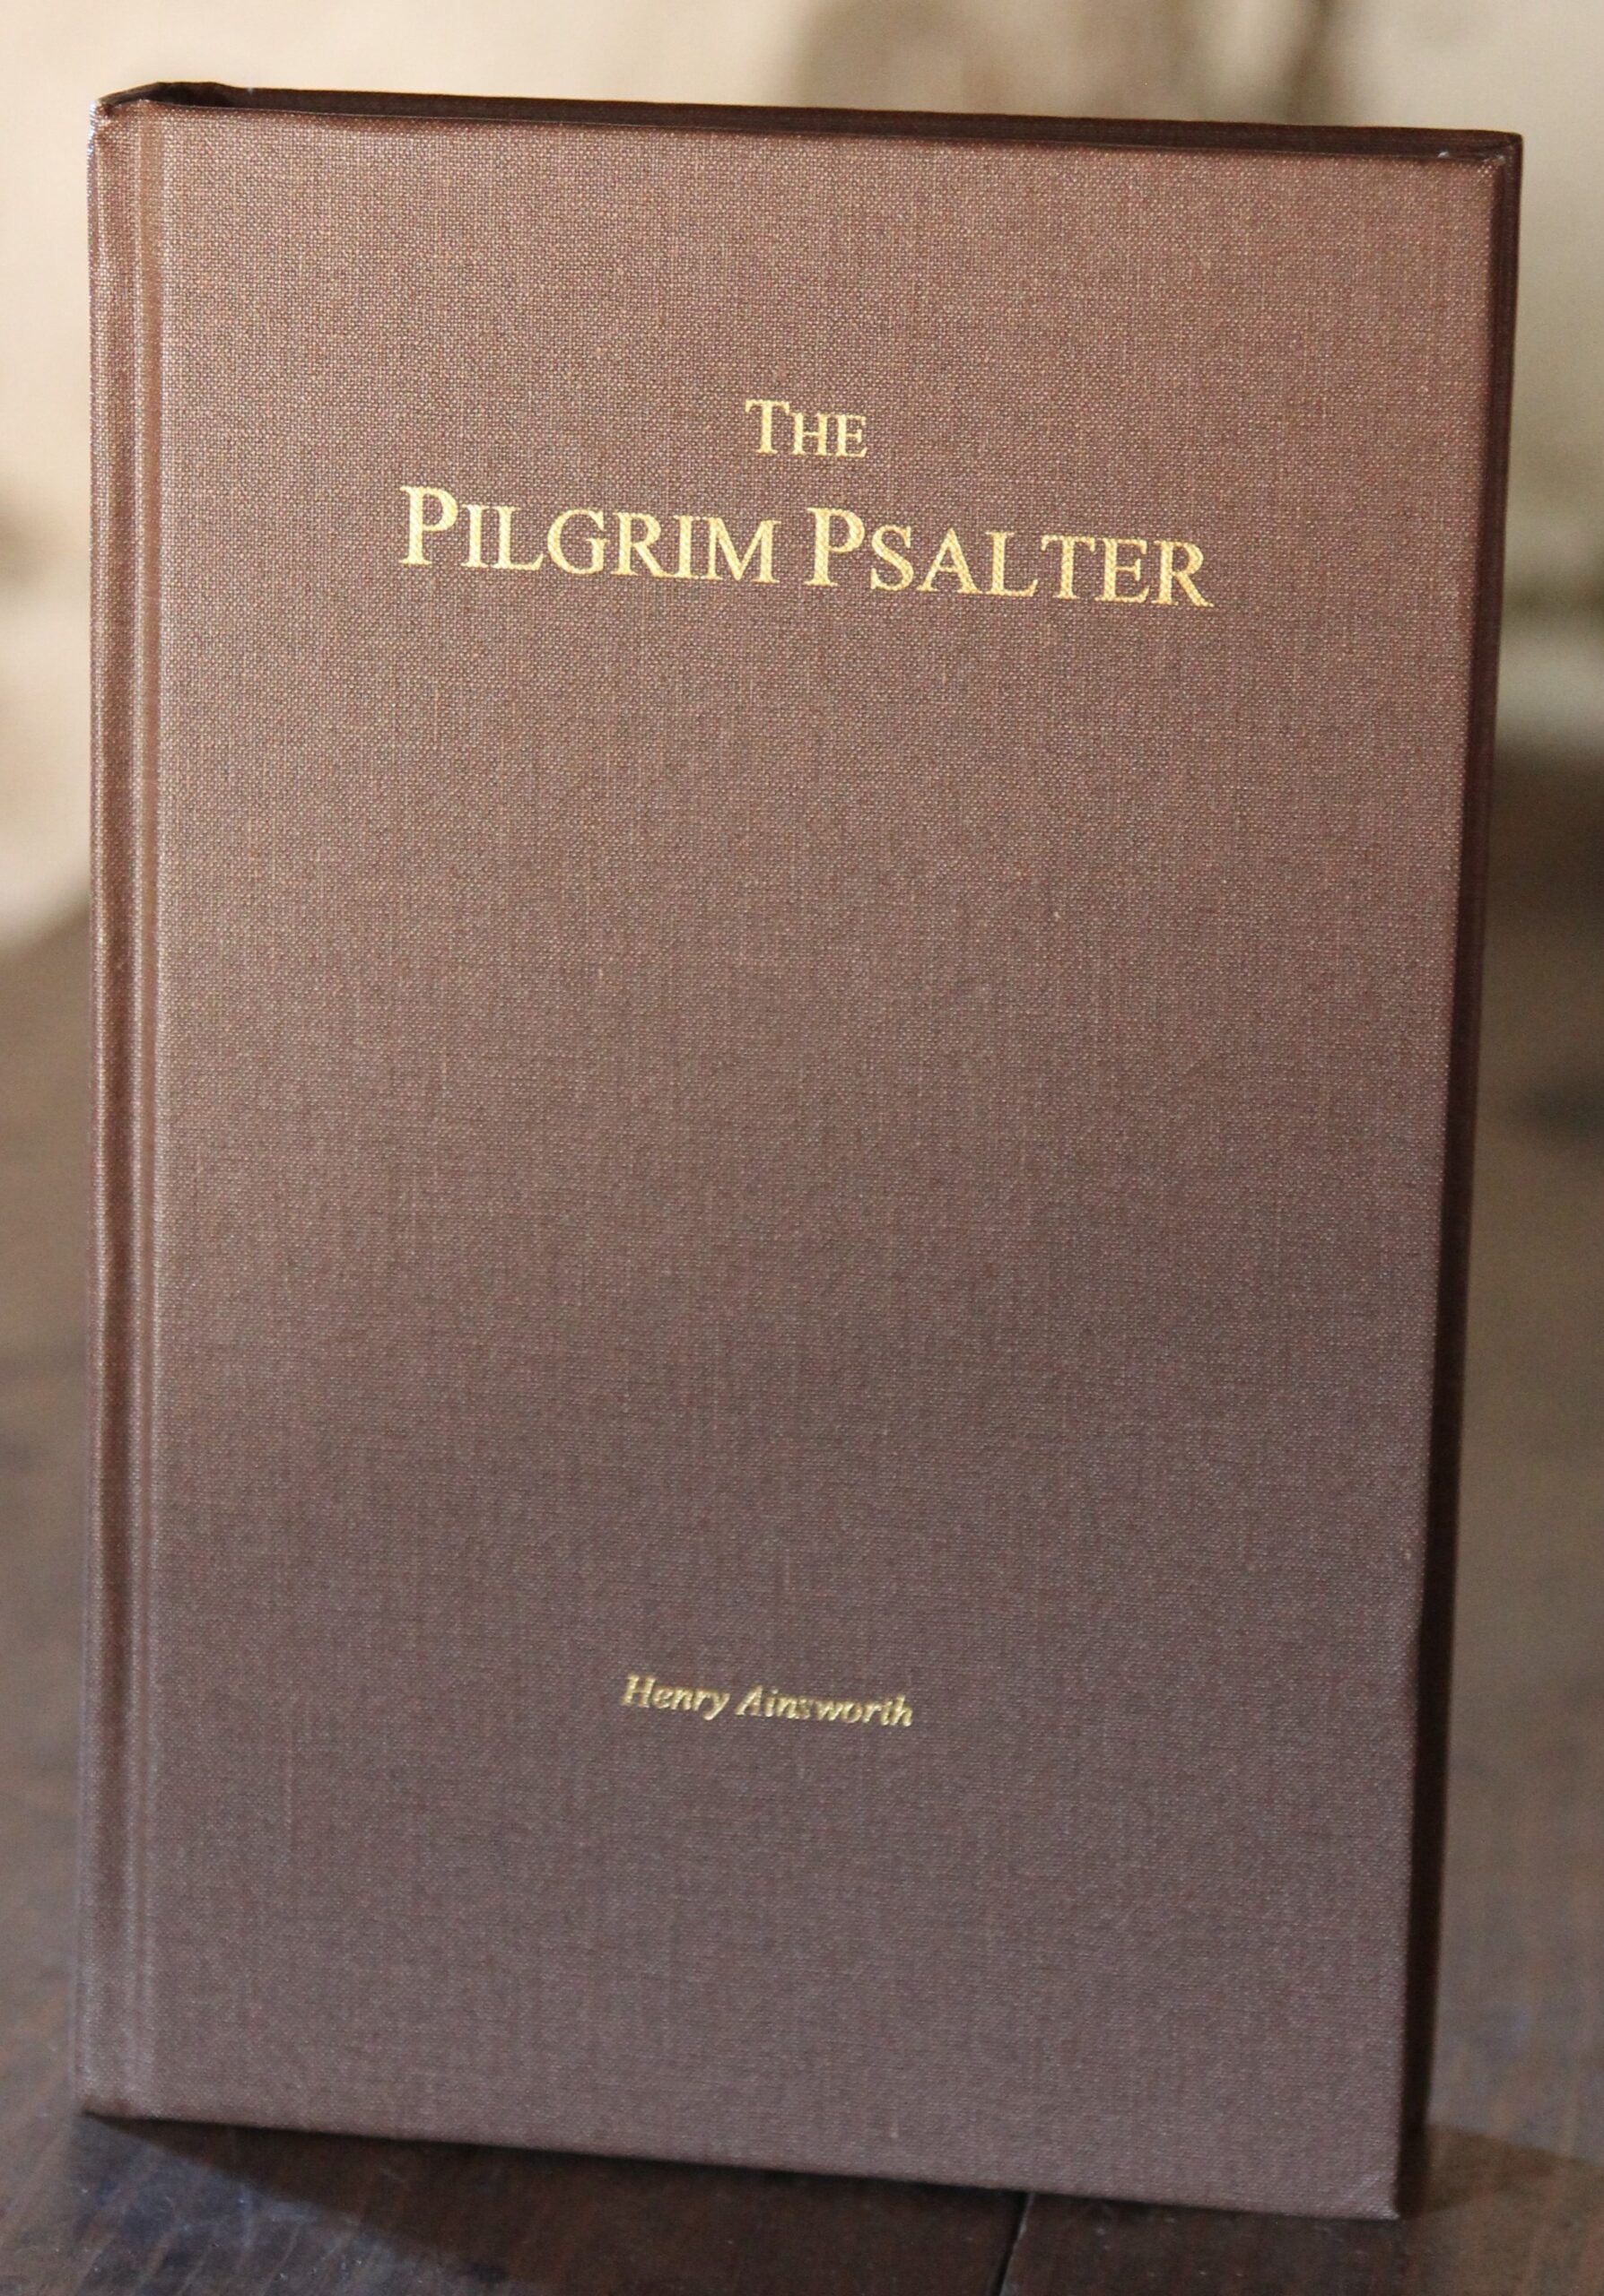 The Pilgrim Psalter